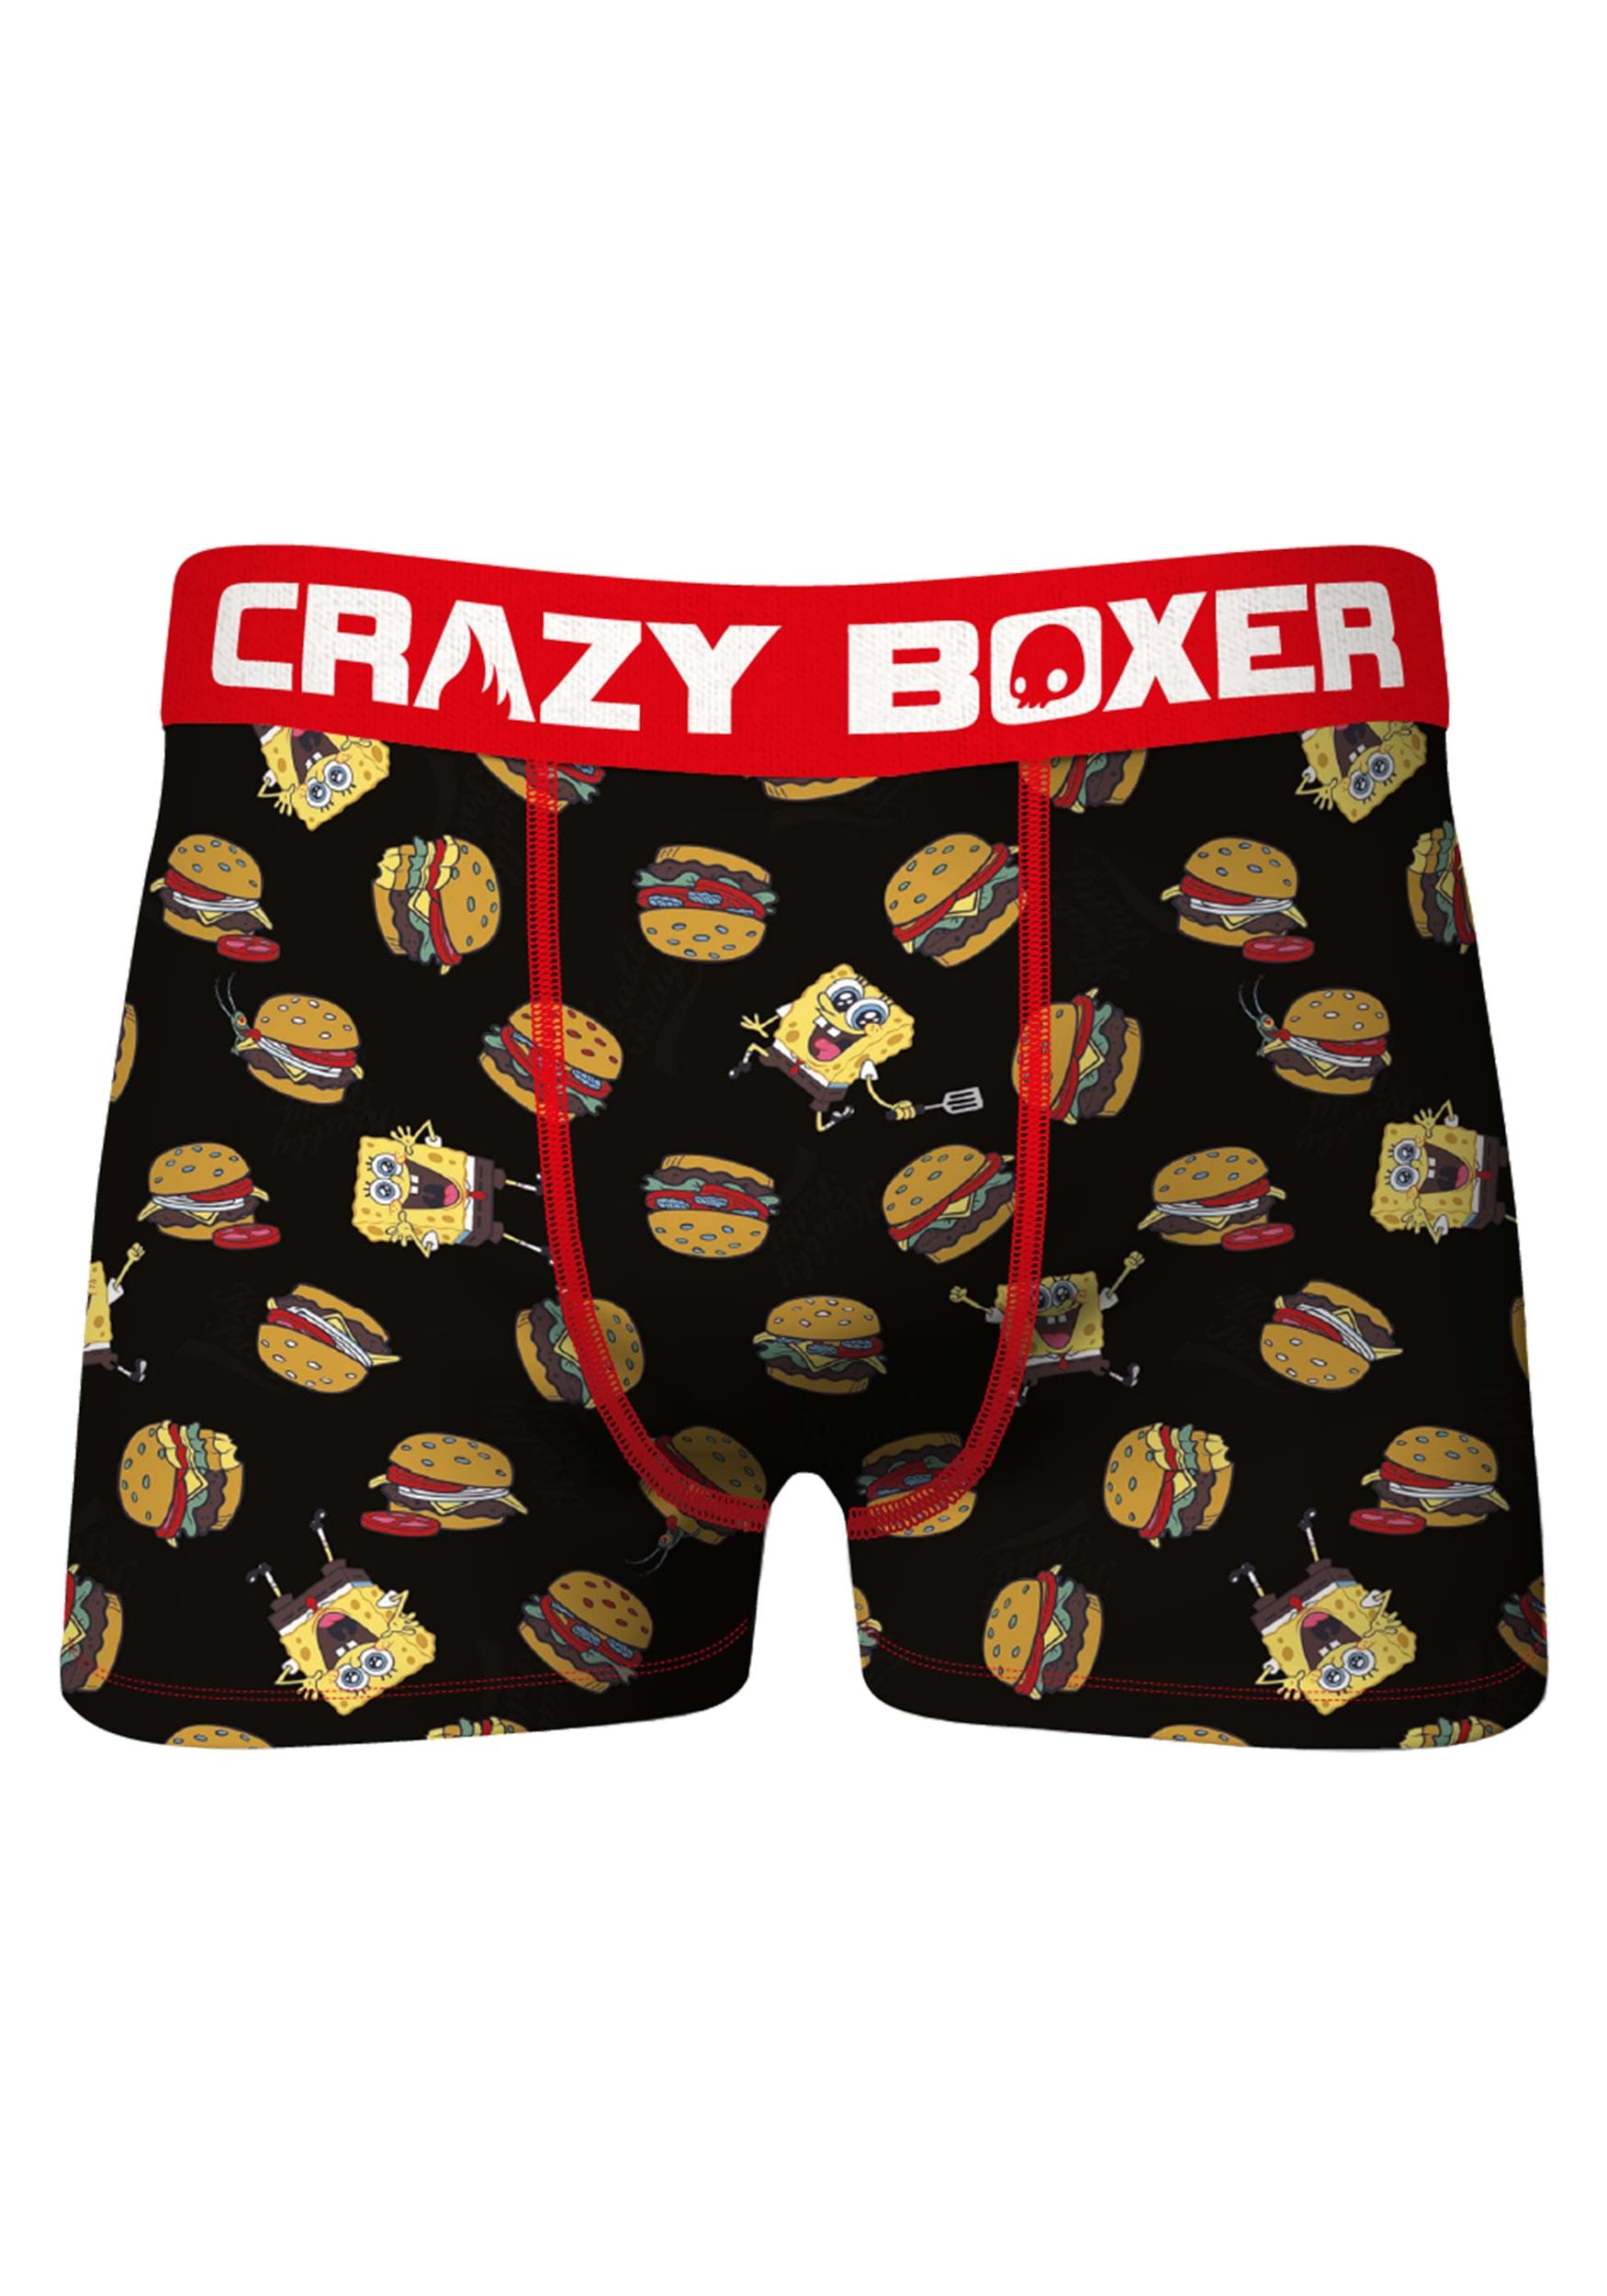 https://images.fun.com.au/products/74634/1-1/crazy-boxers-mens-spongebob-food-boxer-briefs.jpg